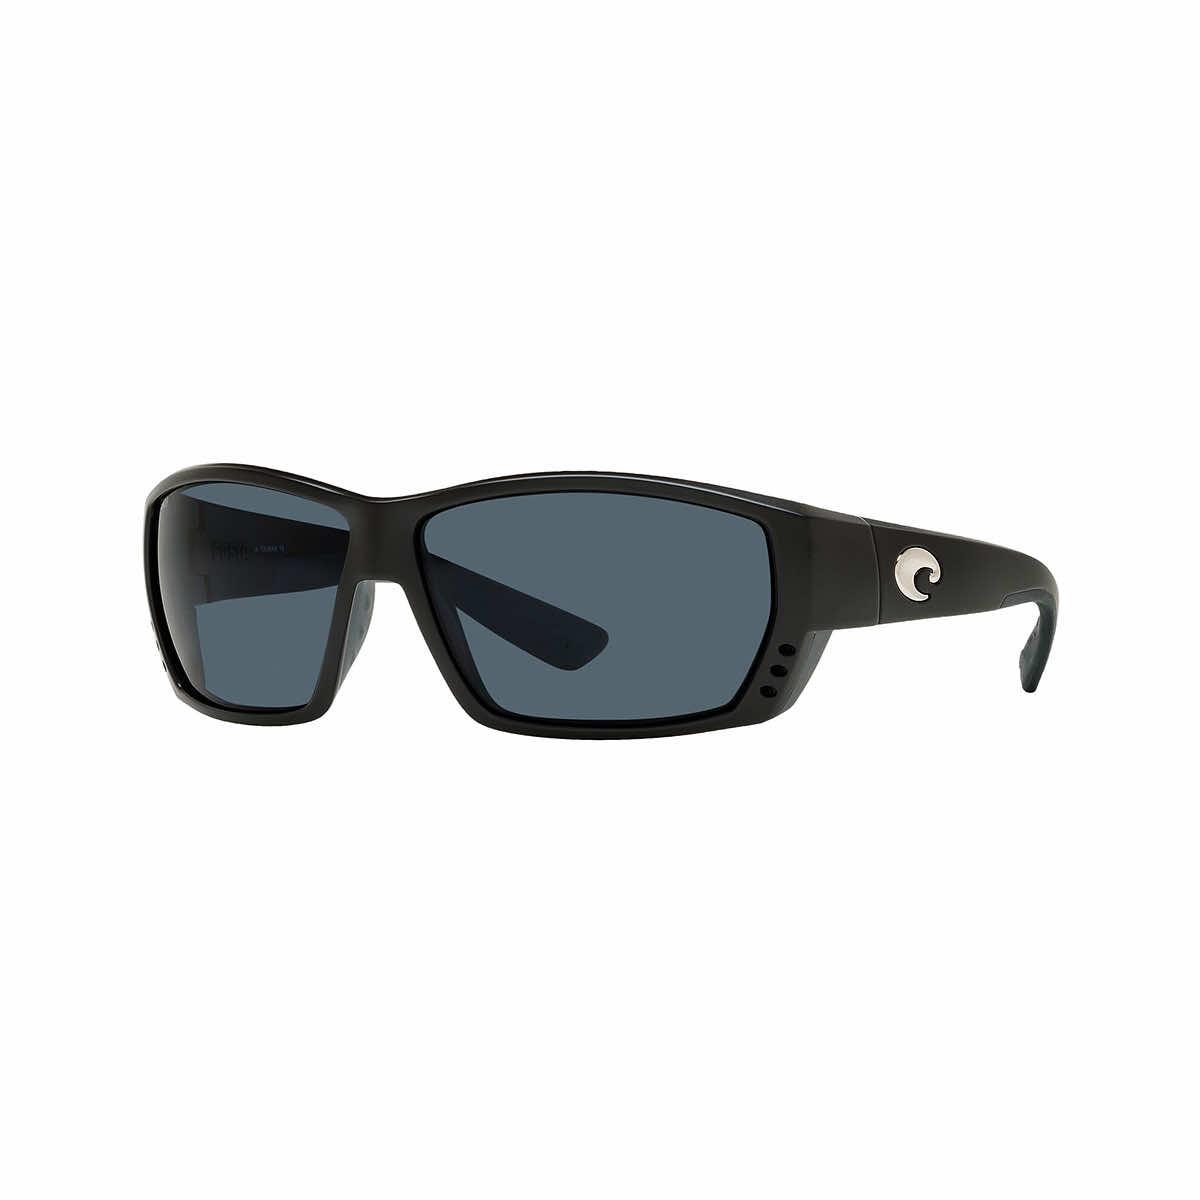  Tuna Alley 580p Sunglasses - Polarized Polycarbonate